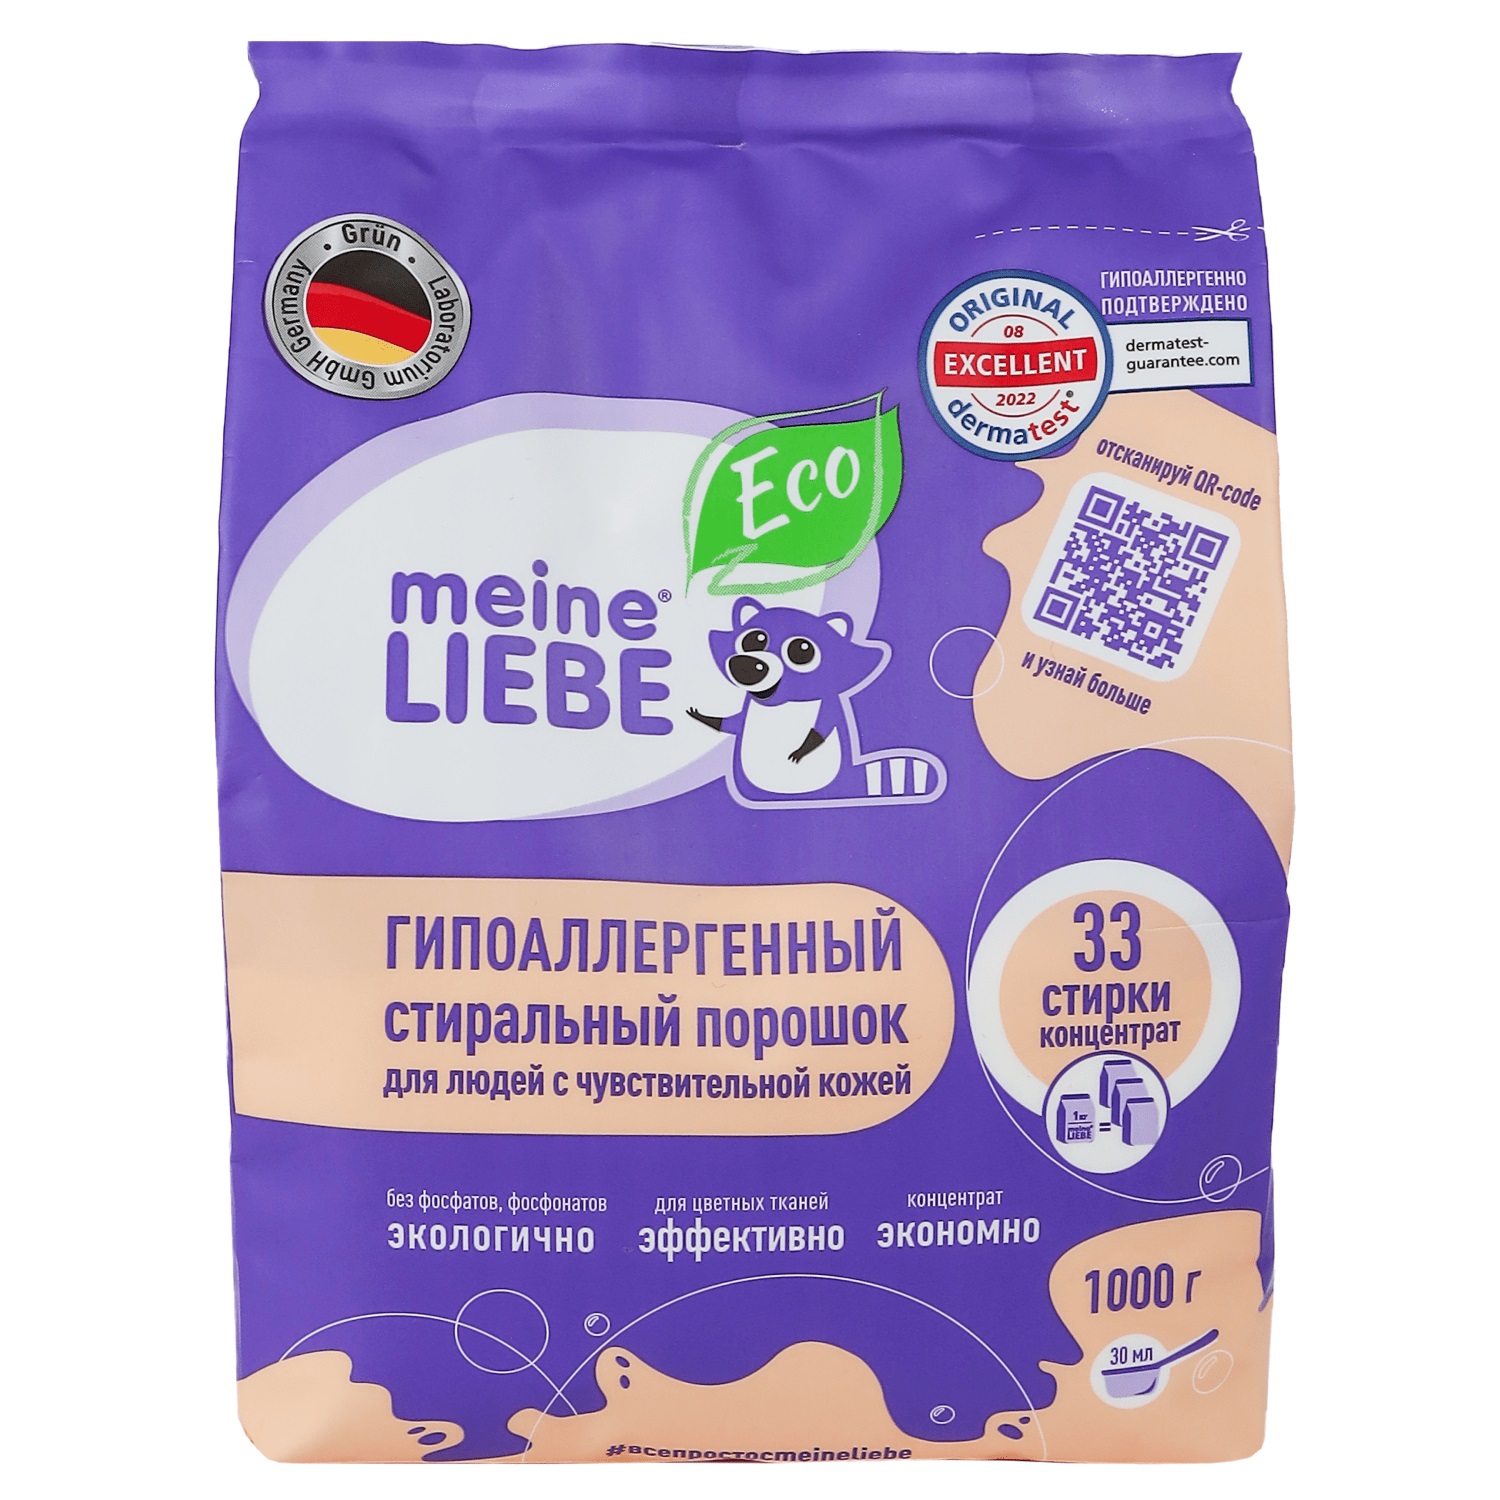 Meine Liebe Гипоаллергенный стиральный порошок для людей с чувствительной кожей, 1 кг (Meine Liebe, Стирка) цена и фото